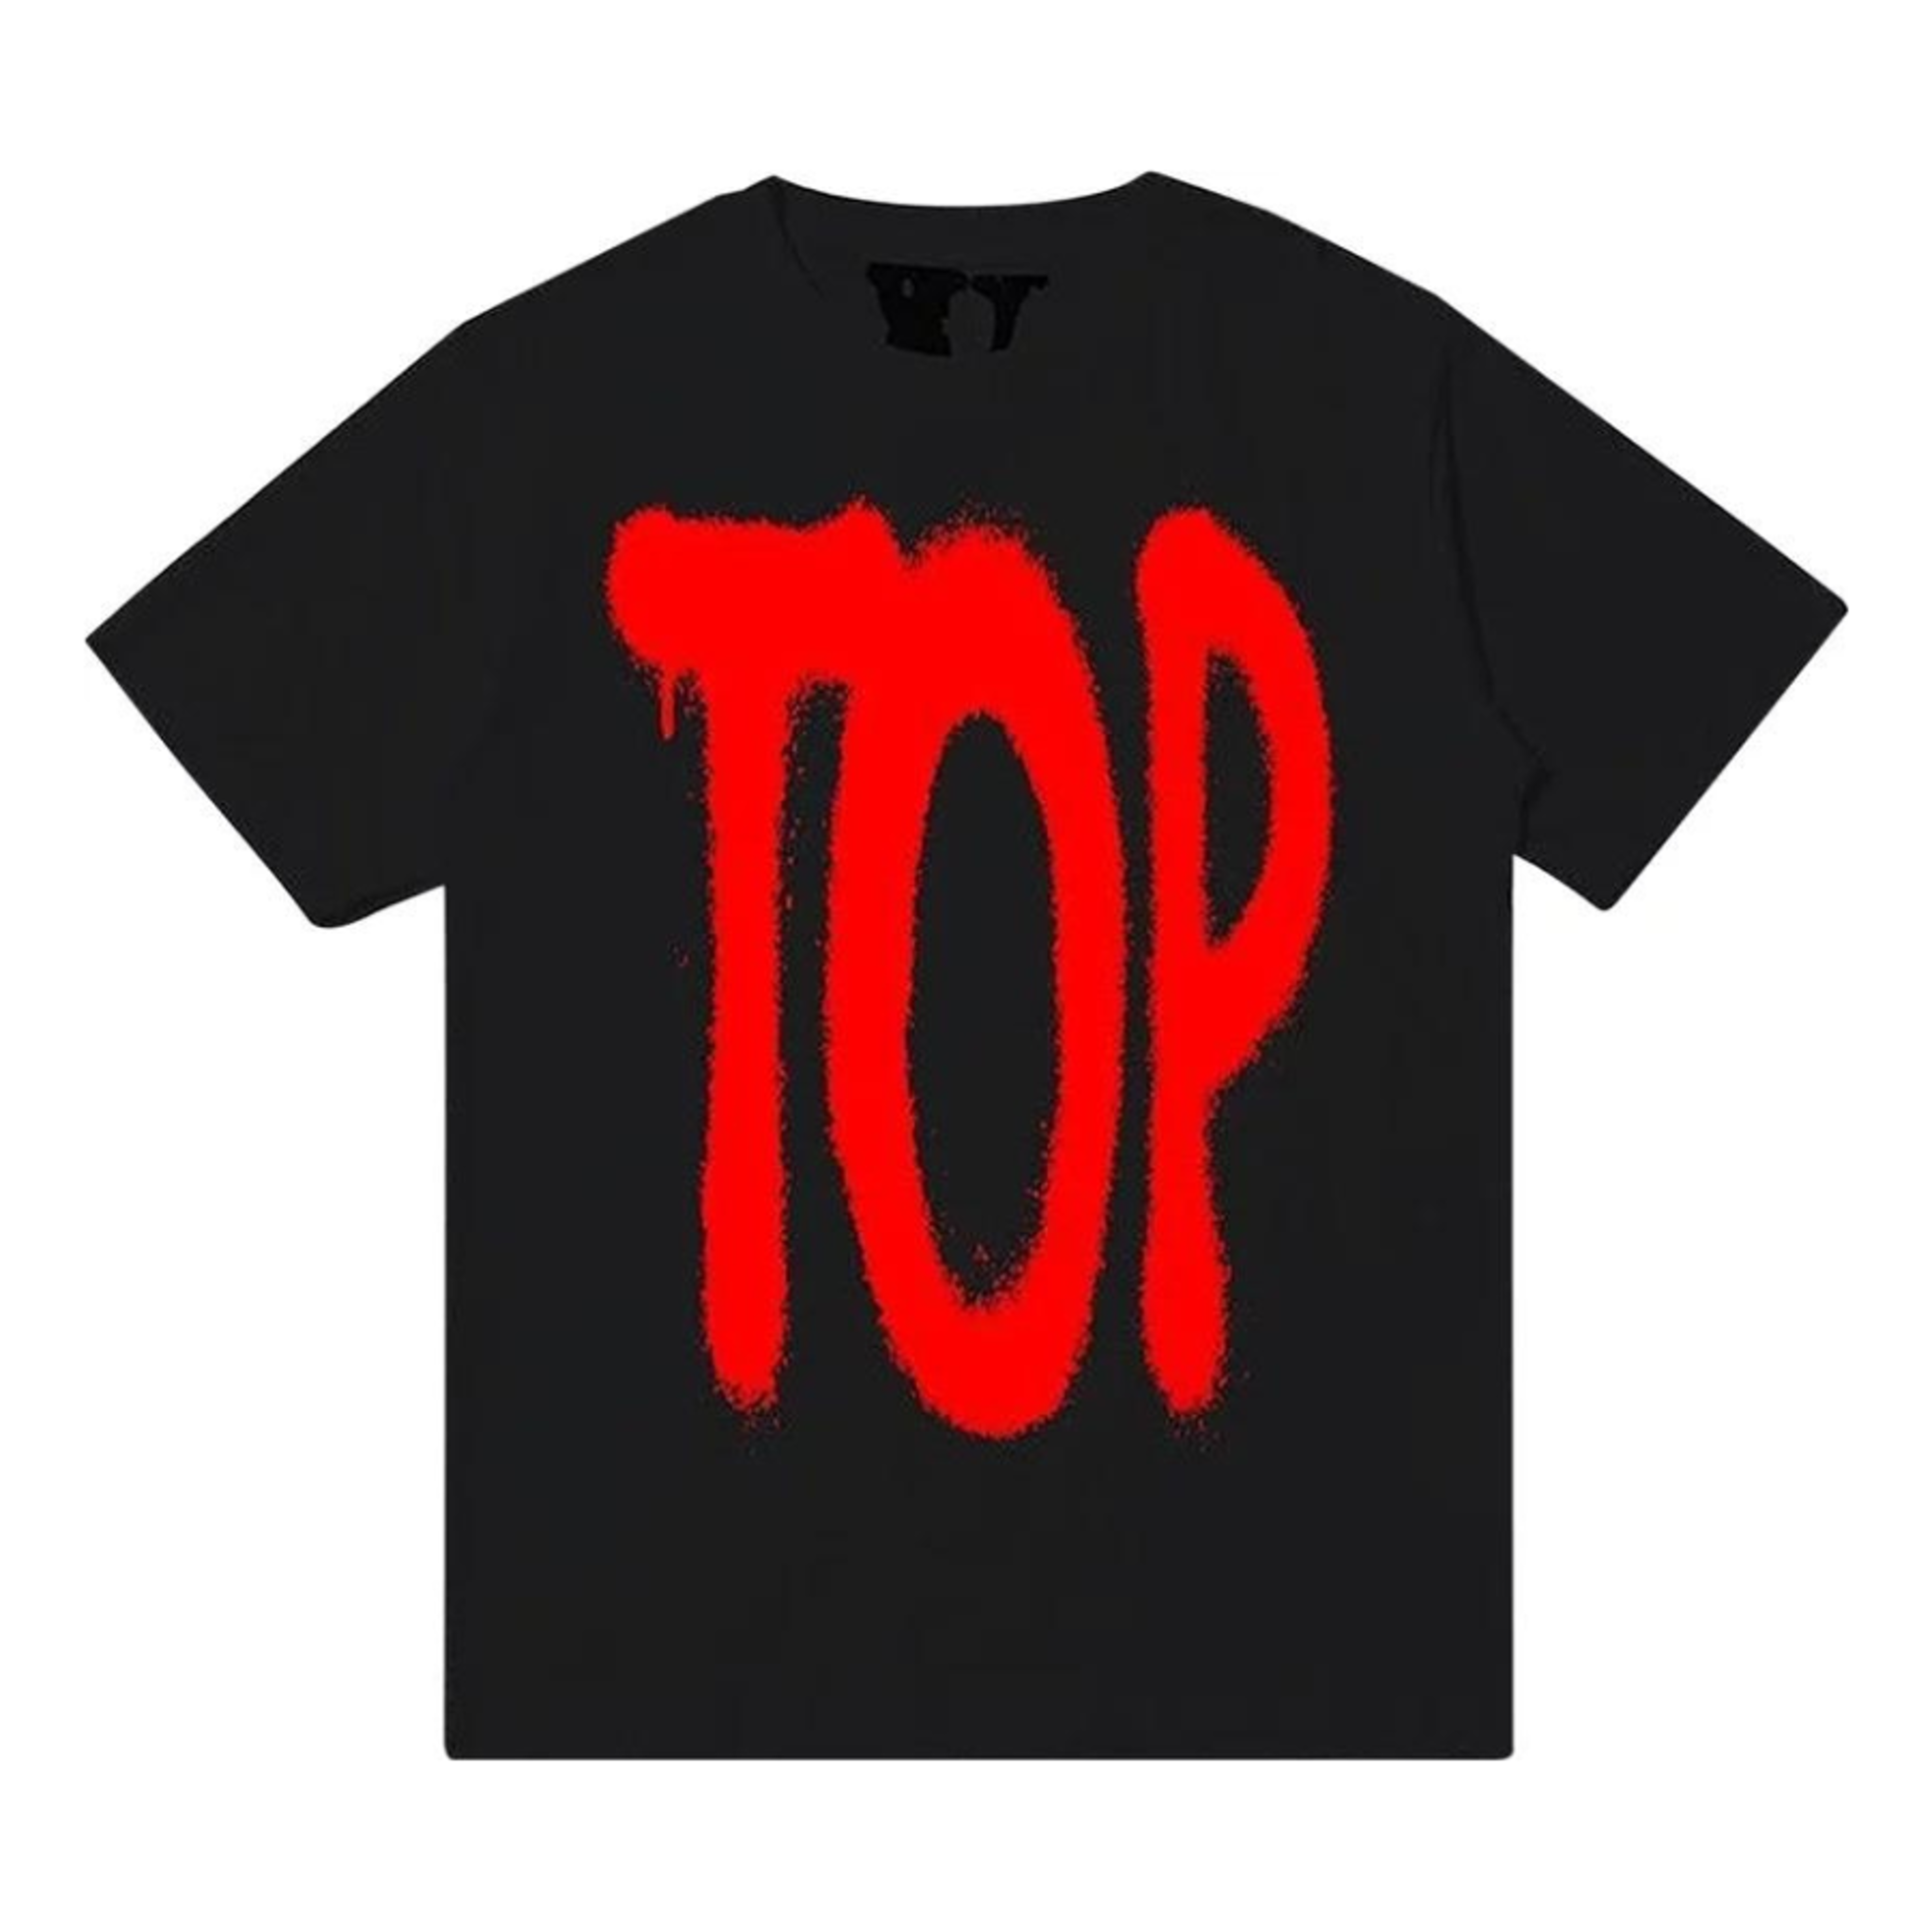 Vlone X NBA Youngboy Top T-Shirt - Black